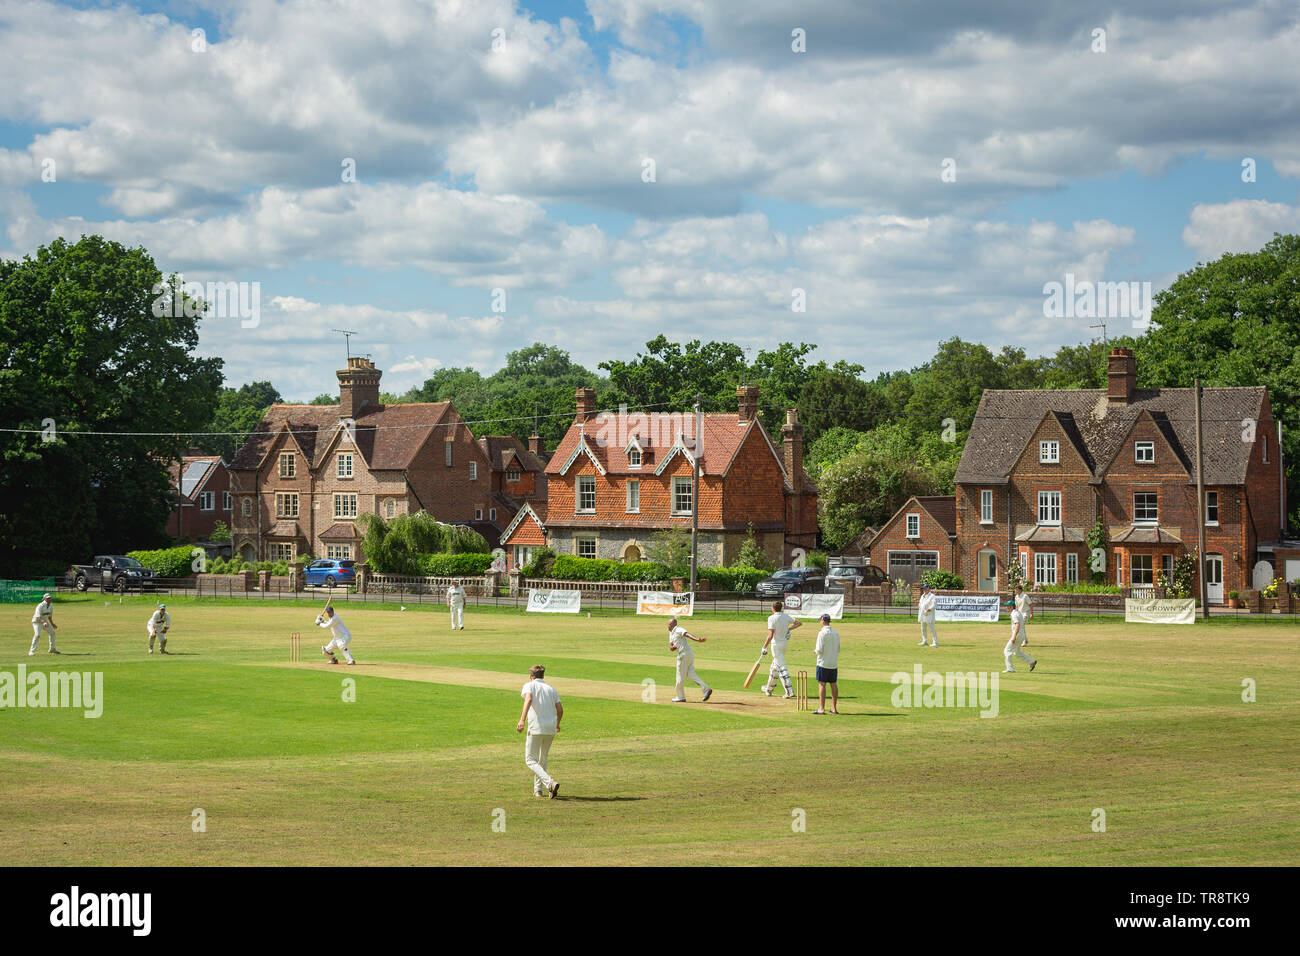 Un village anglais typique scène cricket Cricket Club à Chichester dans le Sussex, Angleterre - juin 2018. Banque D'Images